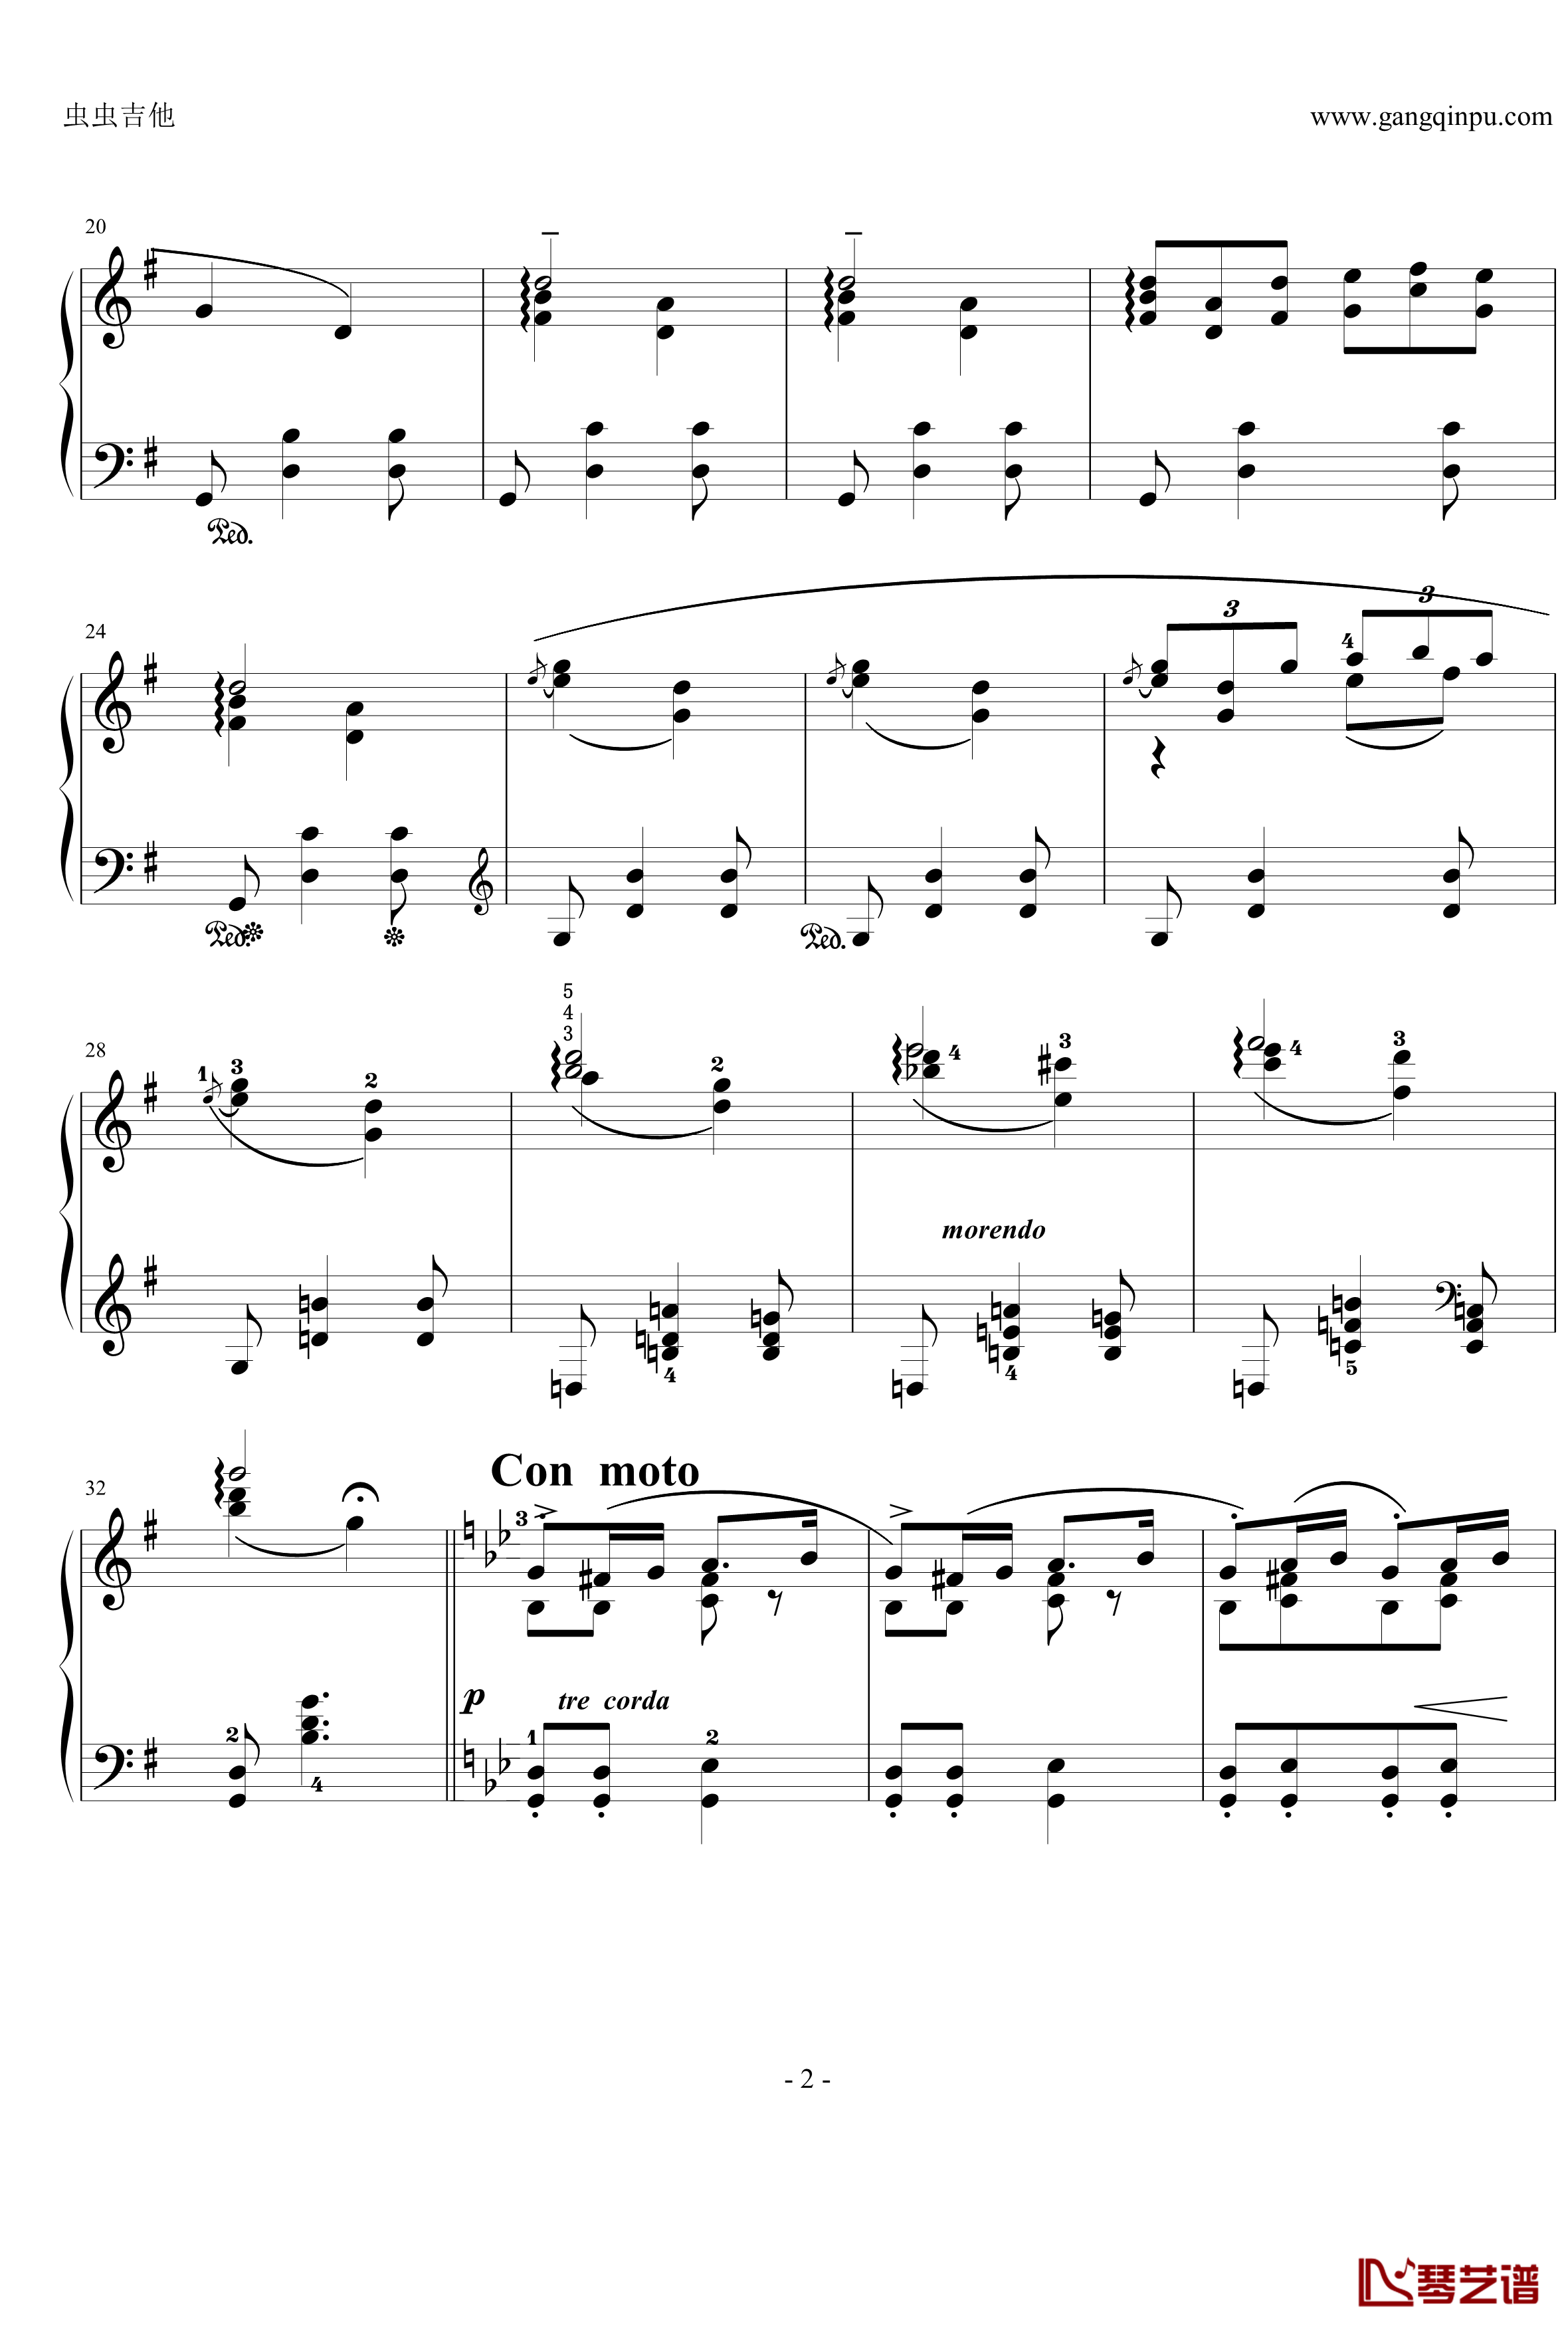 摇篮曲钢琴谱-格里格2